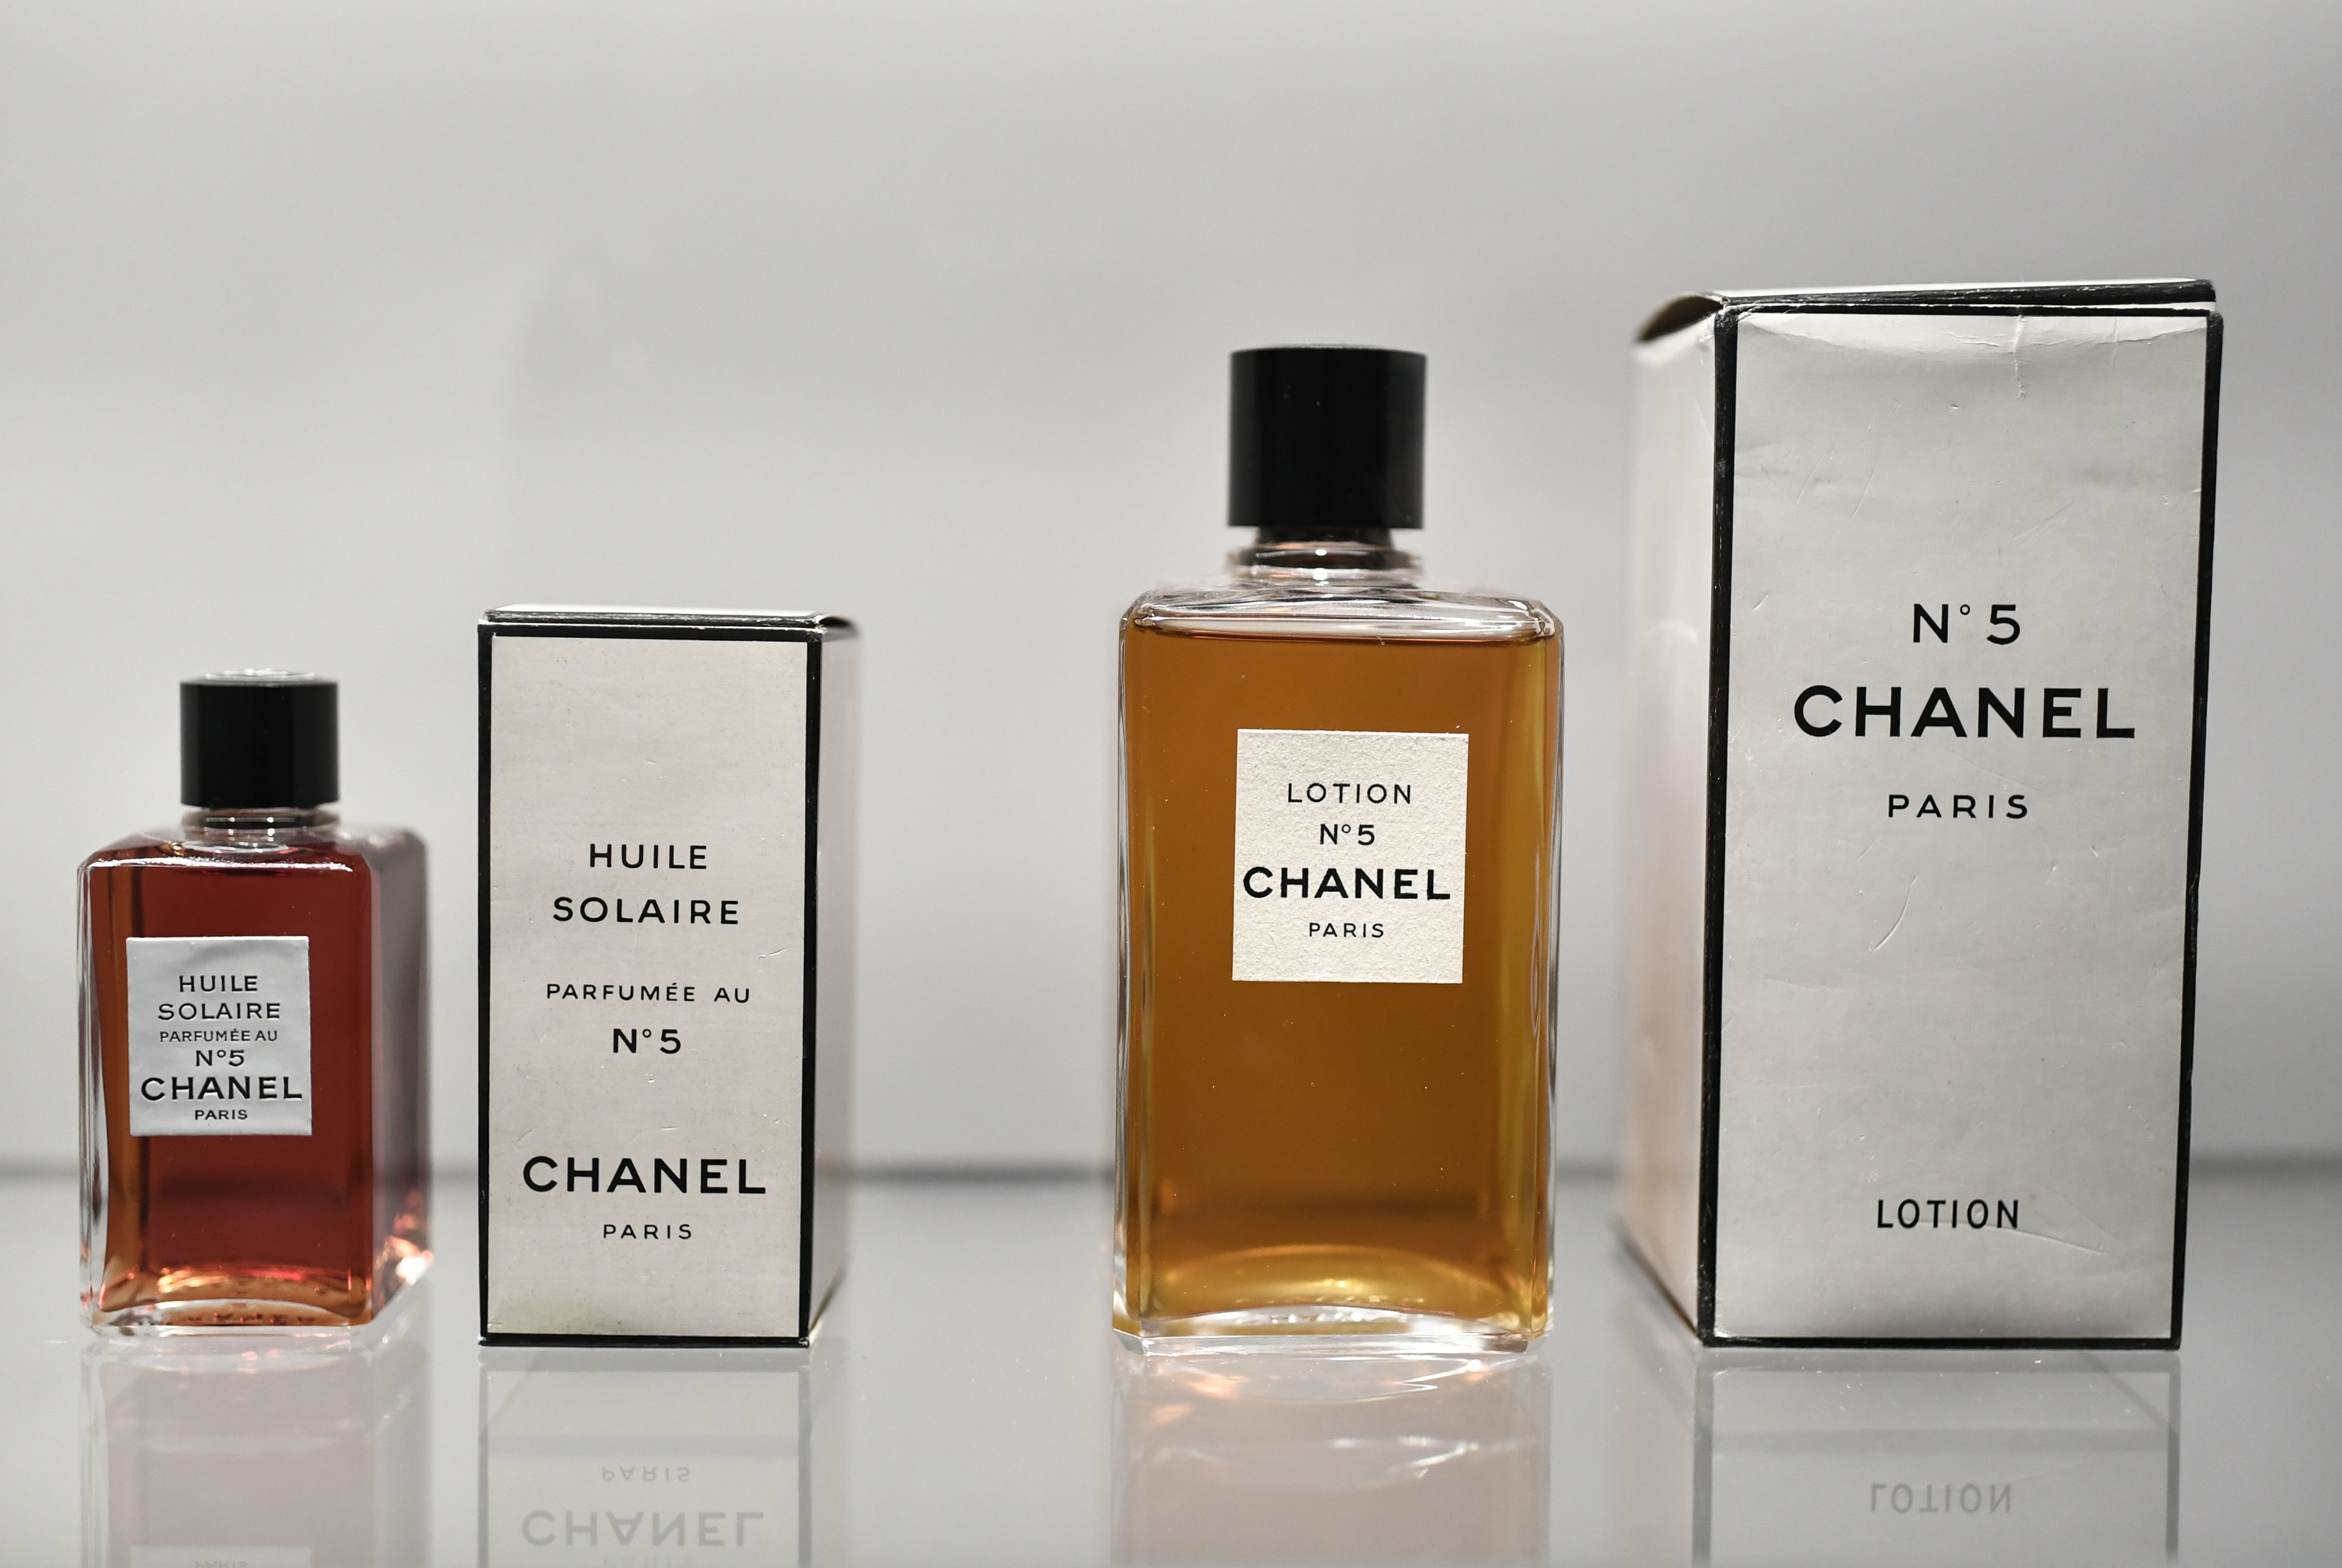 Chanel №5 cumple 100 años: curiosidades sobre el perfume más